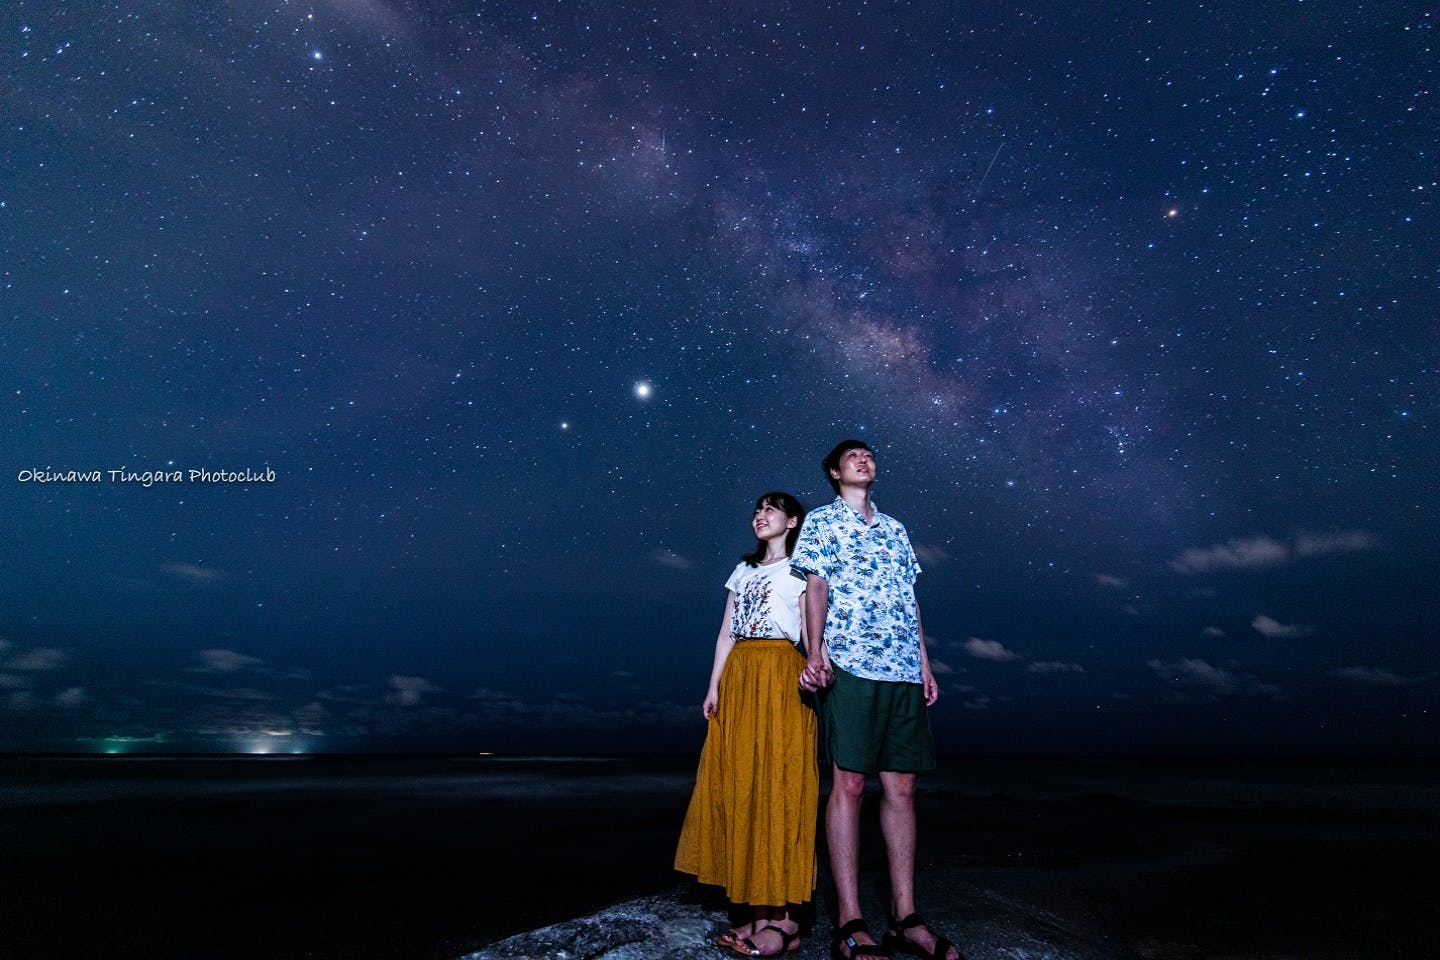 沖縄 本島 南部 星空フォトツアー 夜空の綺麗なビーチで記念撮影 星空フォトツアー アソビュー